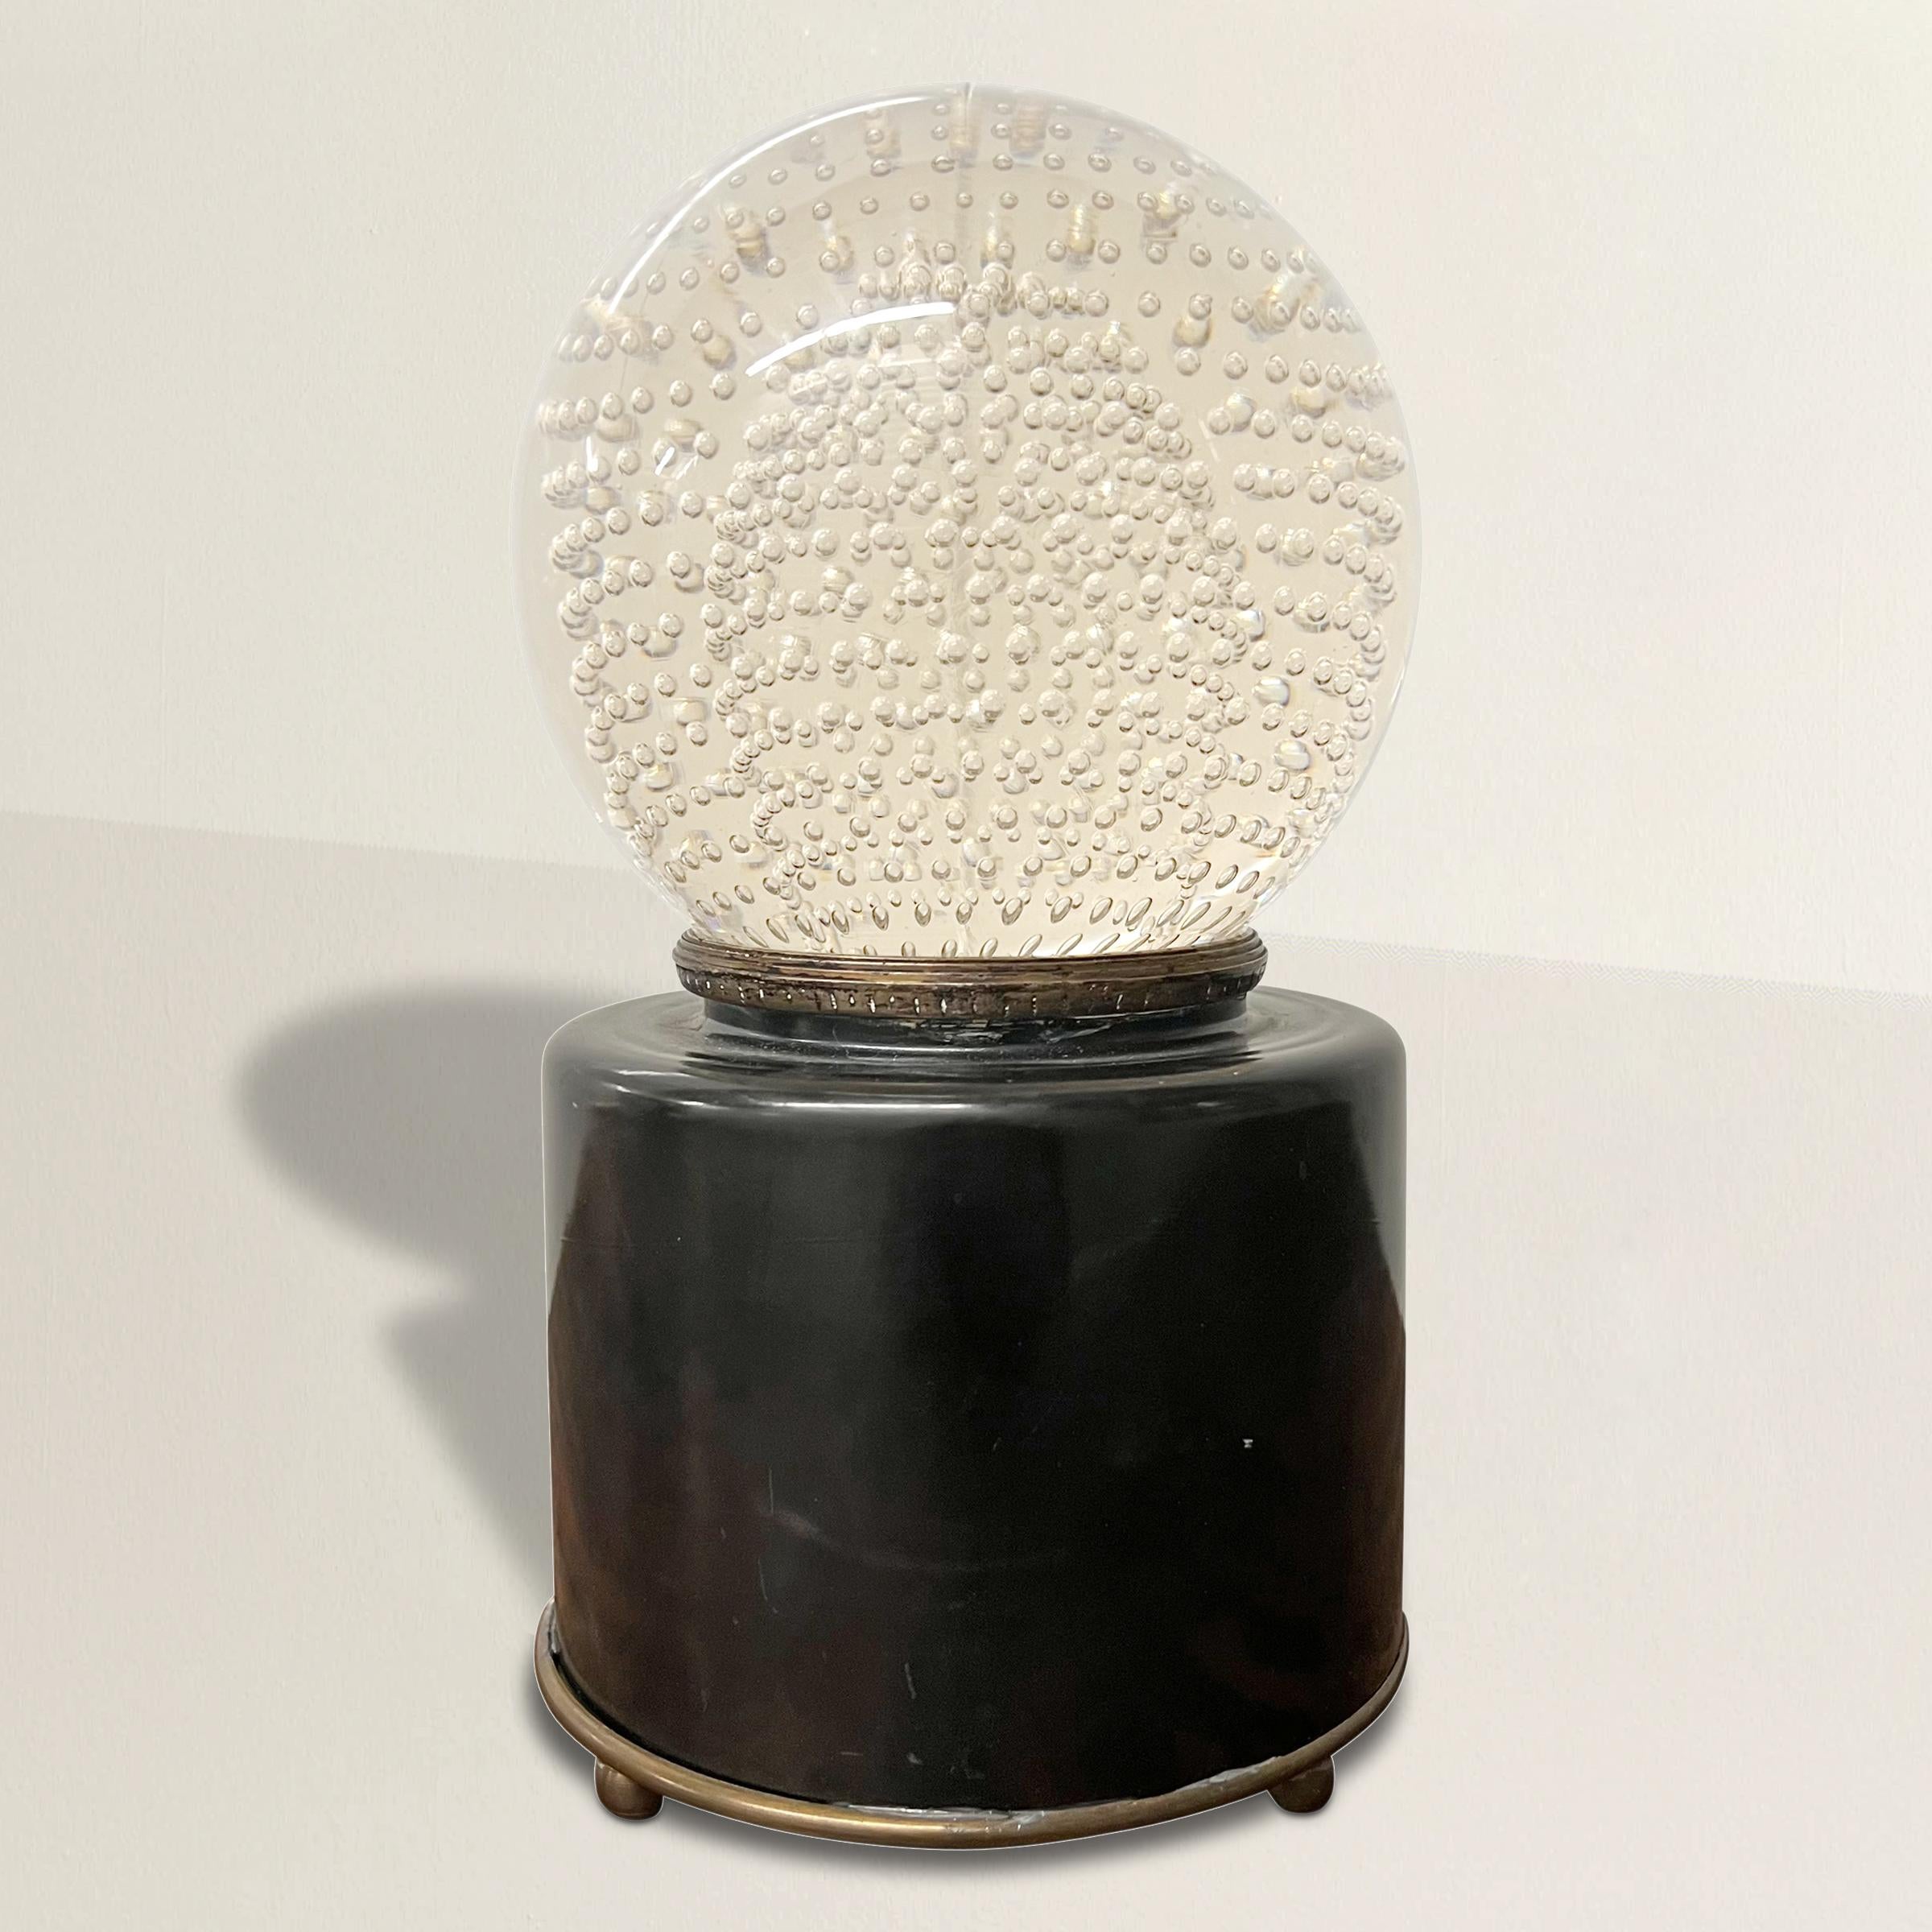 Une chic et brillante lampe de table Art Déco américaine du début du 20ème siècle avec un abat-jour en verre soufflé à la main avec des bulles capturées, et un corps en verre avec une base en laiton. Nouvellement câblé pour les États-Unis.